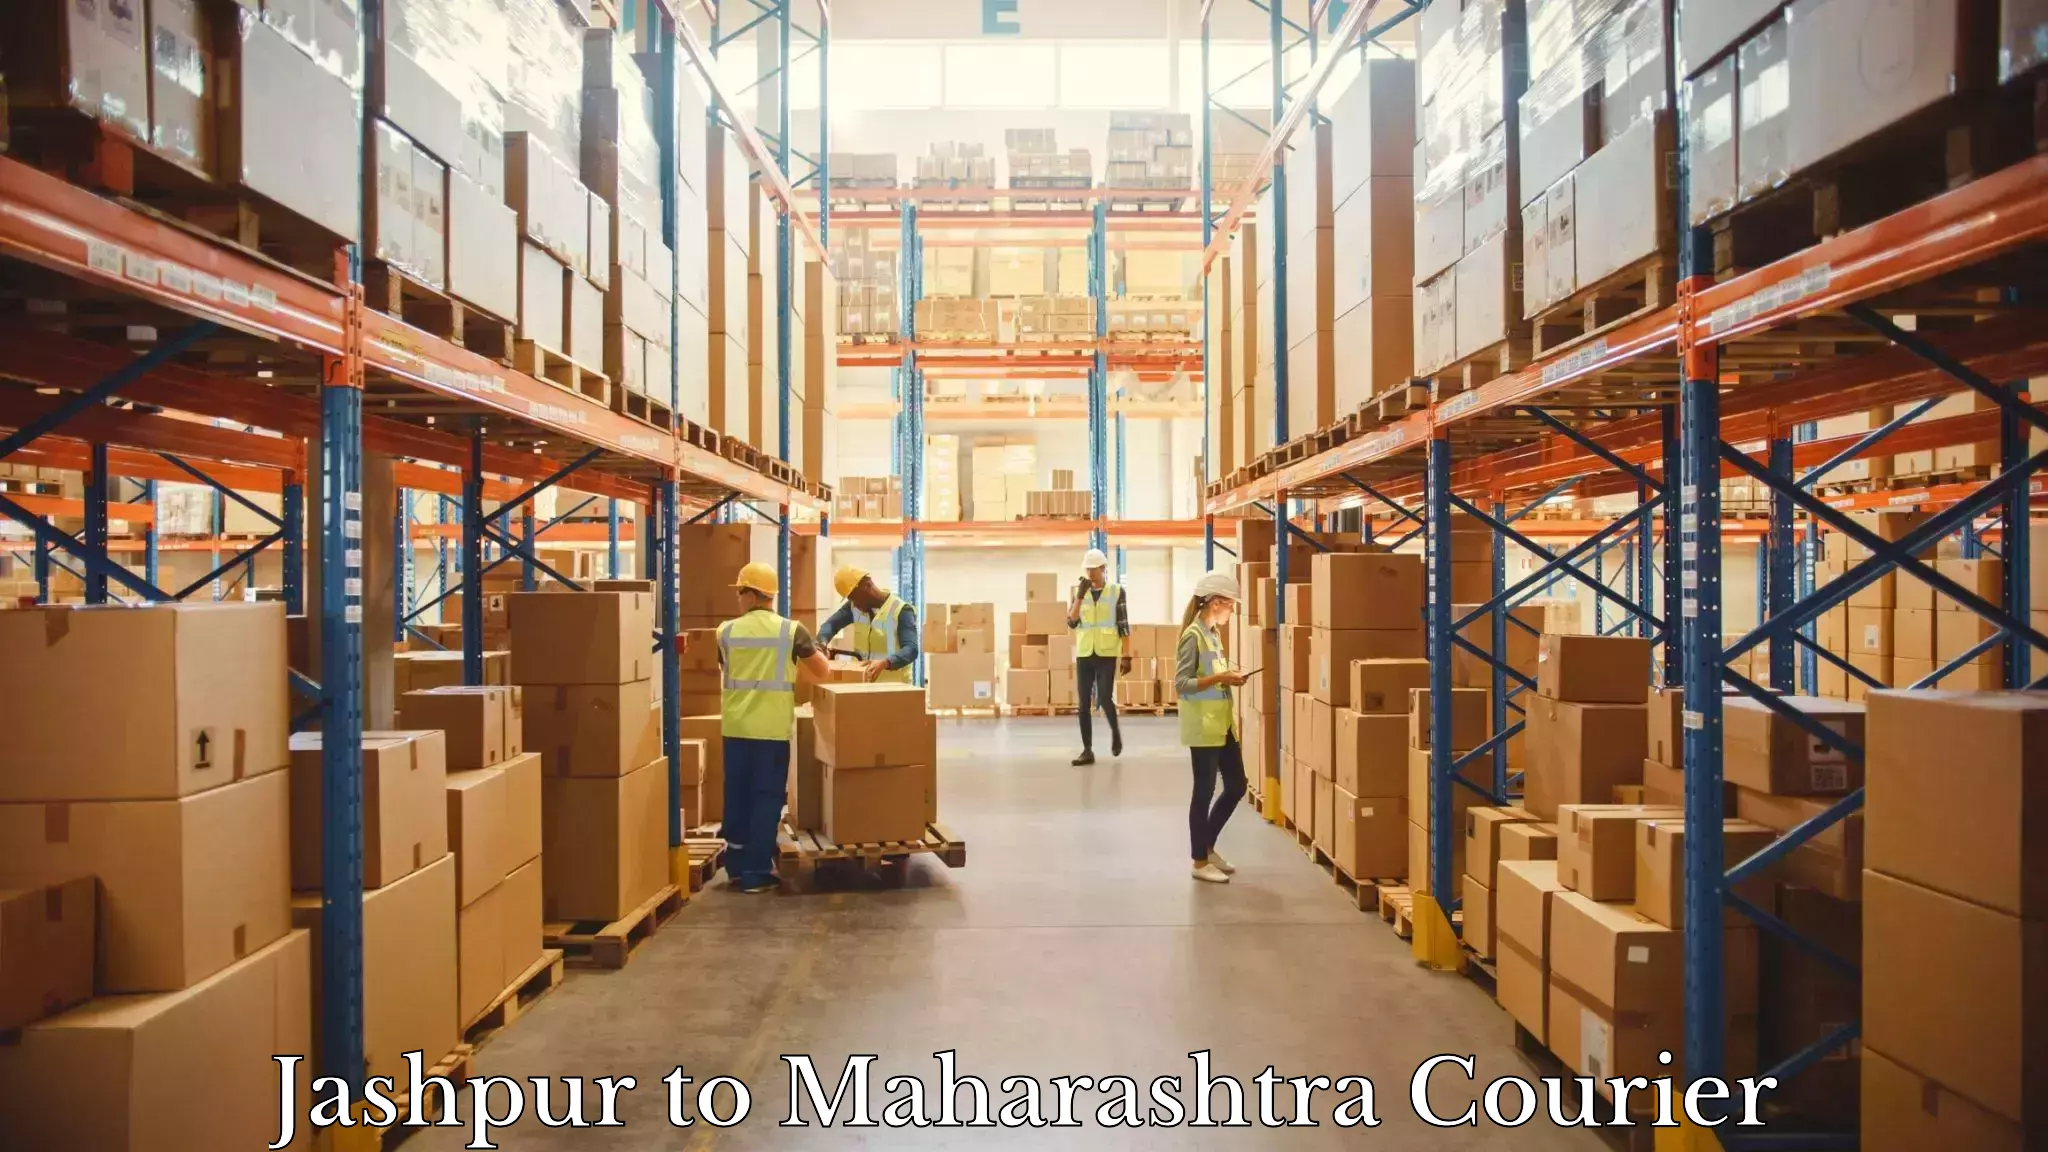 Courier service comparison Jashpur to Kolhapur